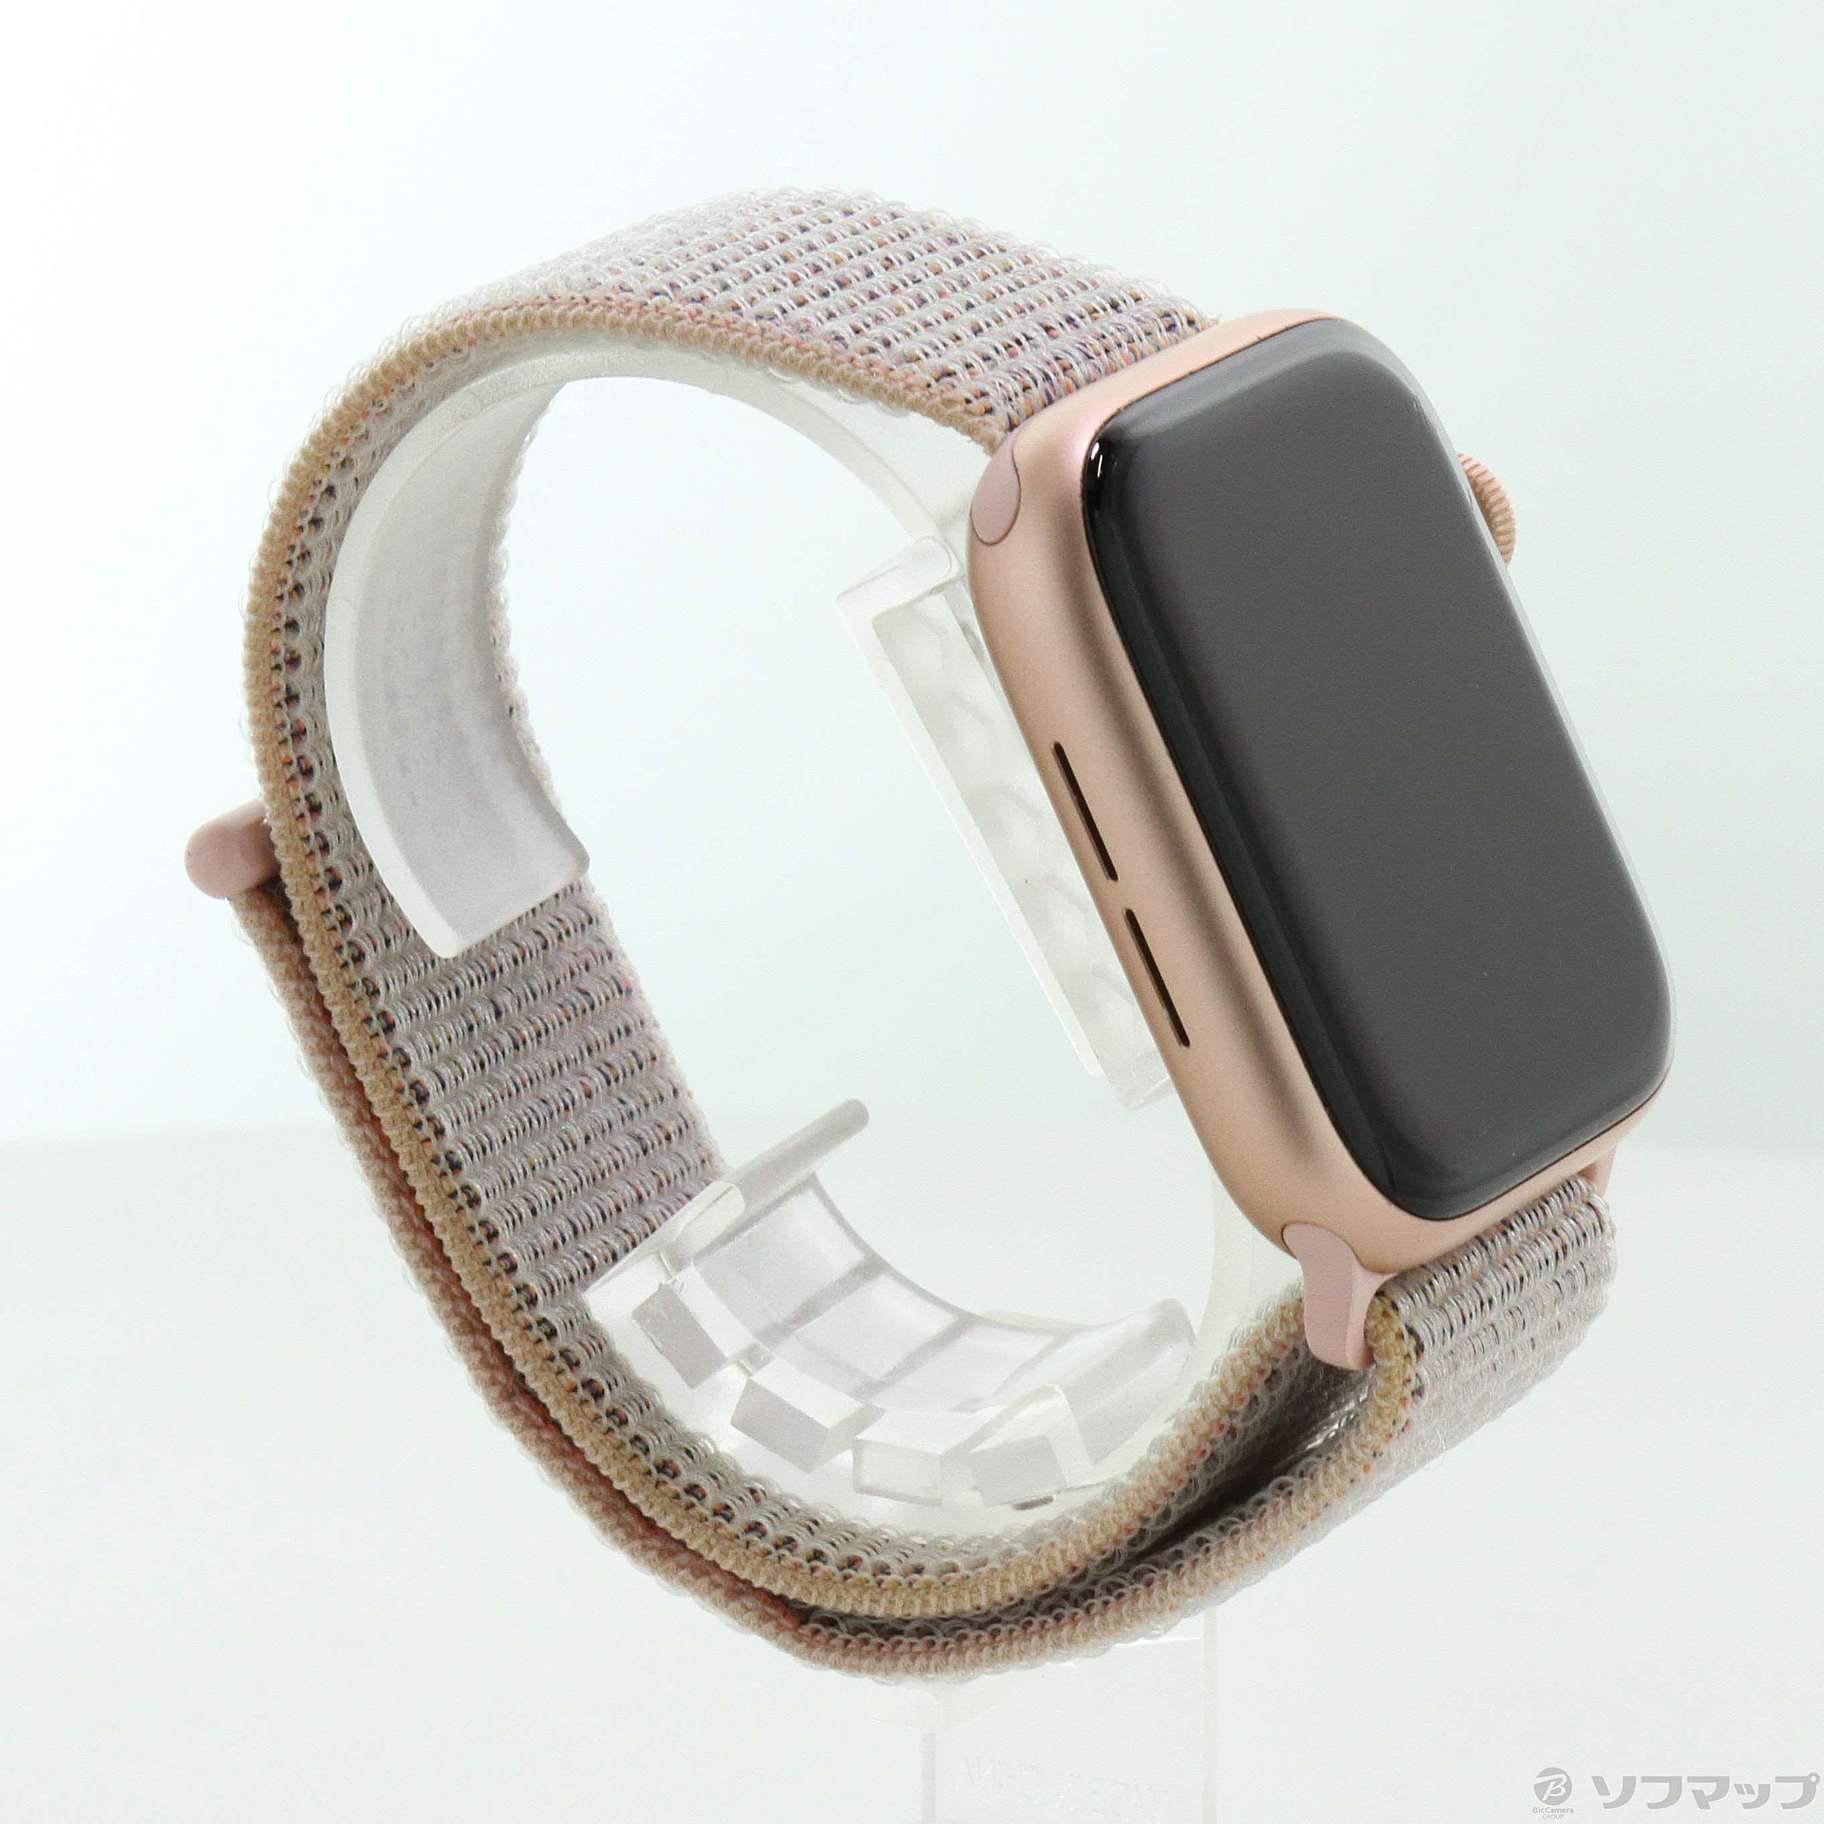 中古】Apple Watch Series 4 GPS 44mm ゴールドアルミニウムケース 